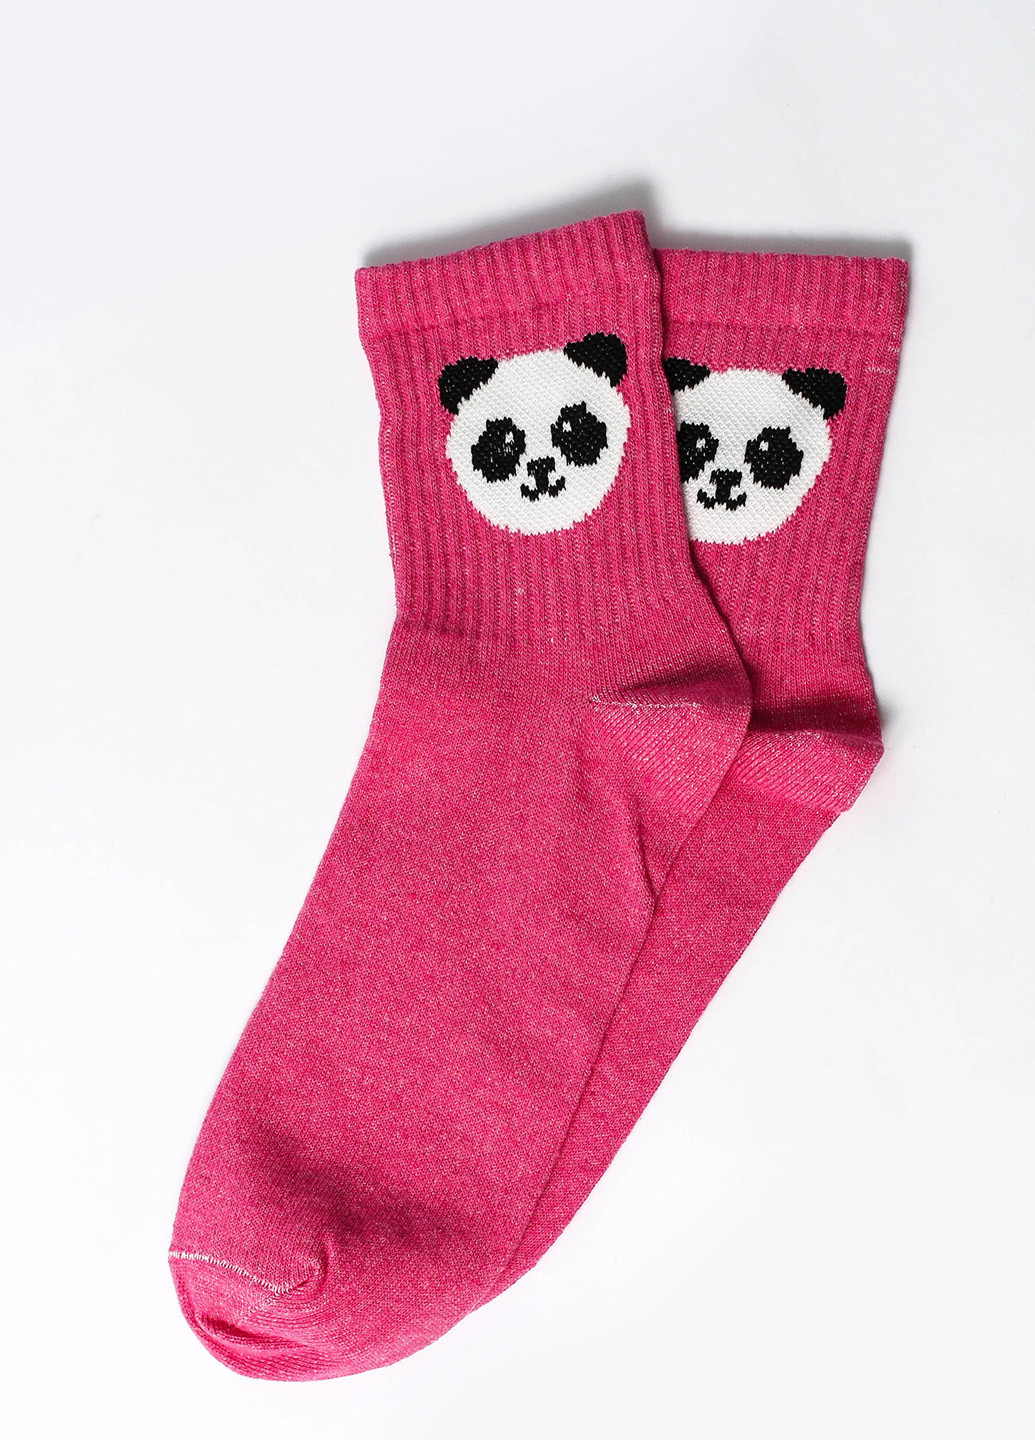 Носки Панда розовый Rock'n'socks розовые повседневные